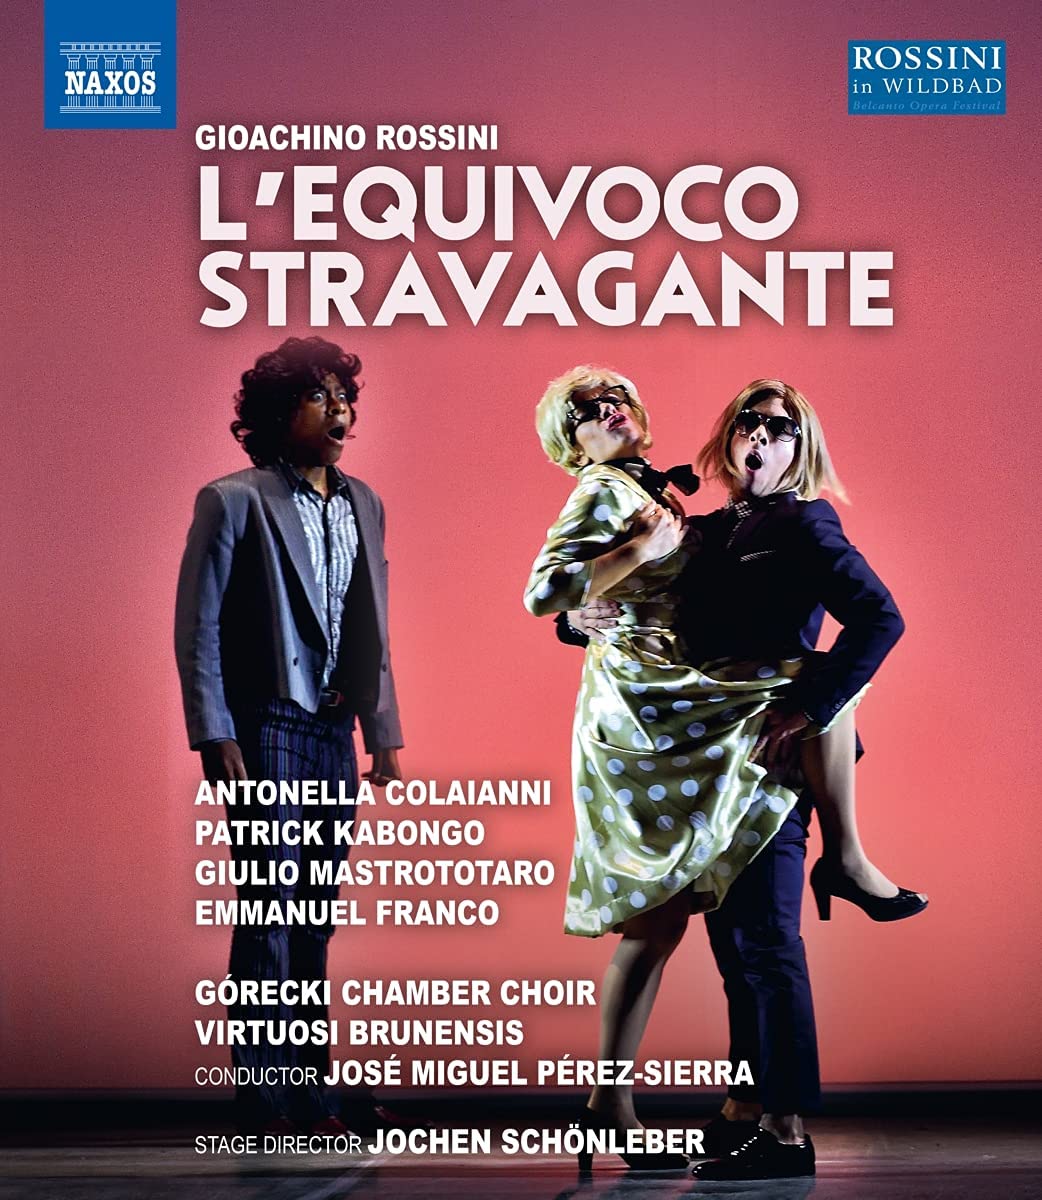 Music Blu-Ray Gioacchino Rossini - L'Equivoco Stravagante NUOVO SIGILLATO, EDIZIONE DEL 07/09/2021 SUBITO DISPONIBILE